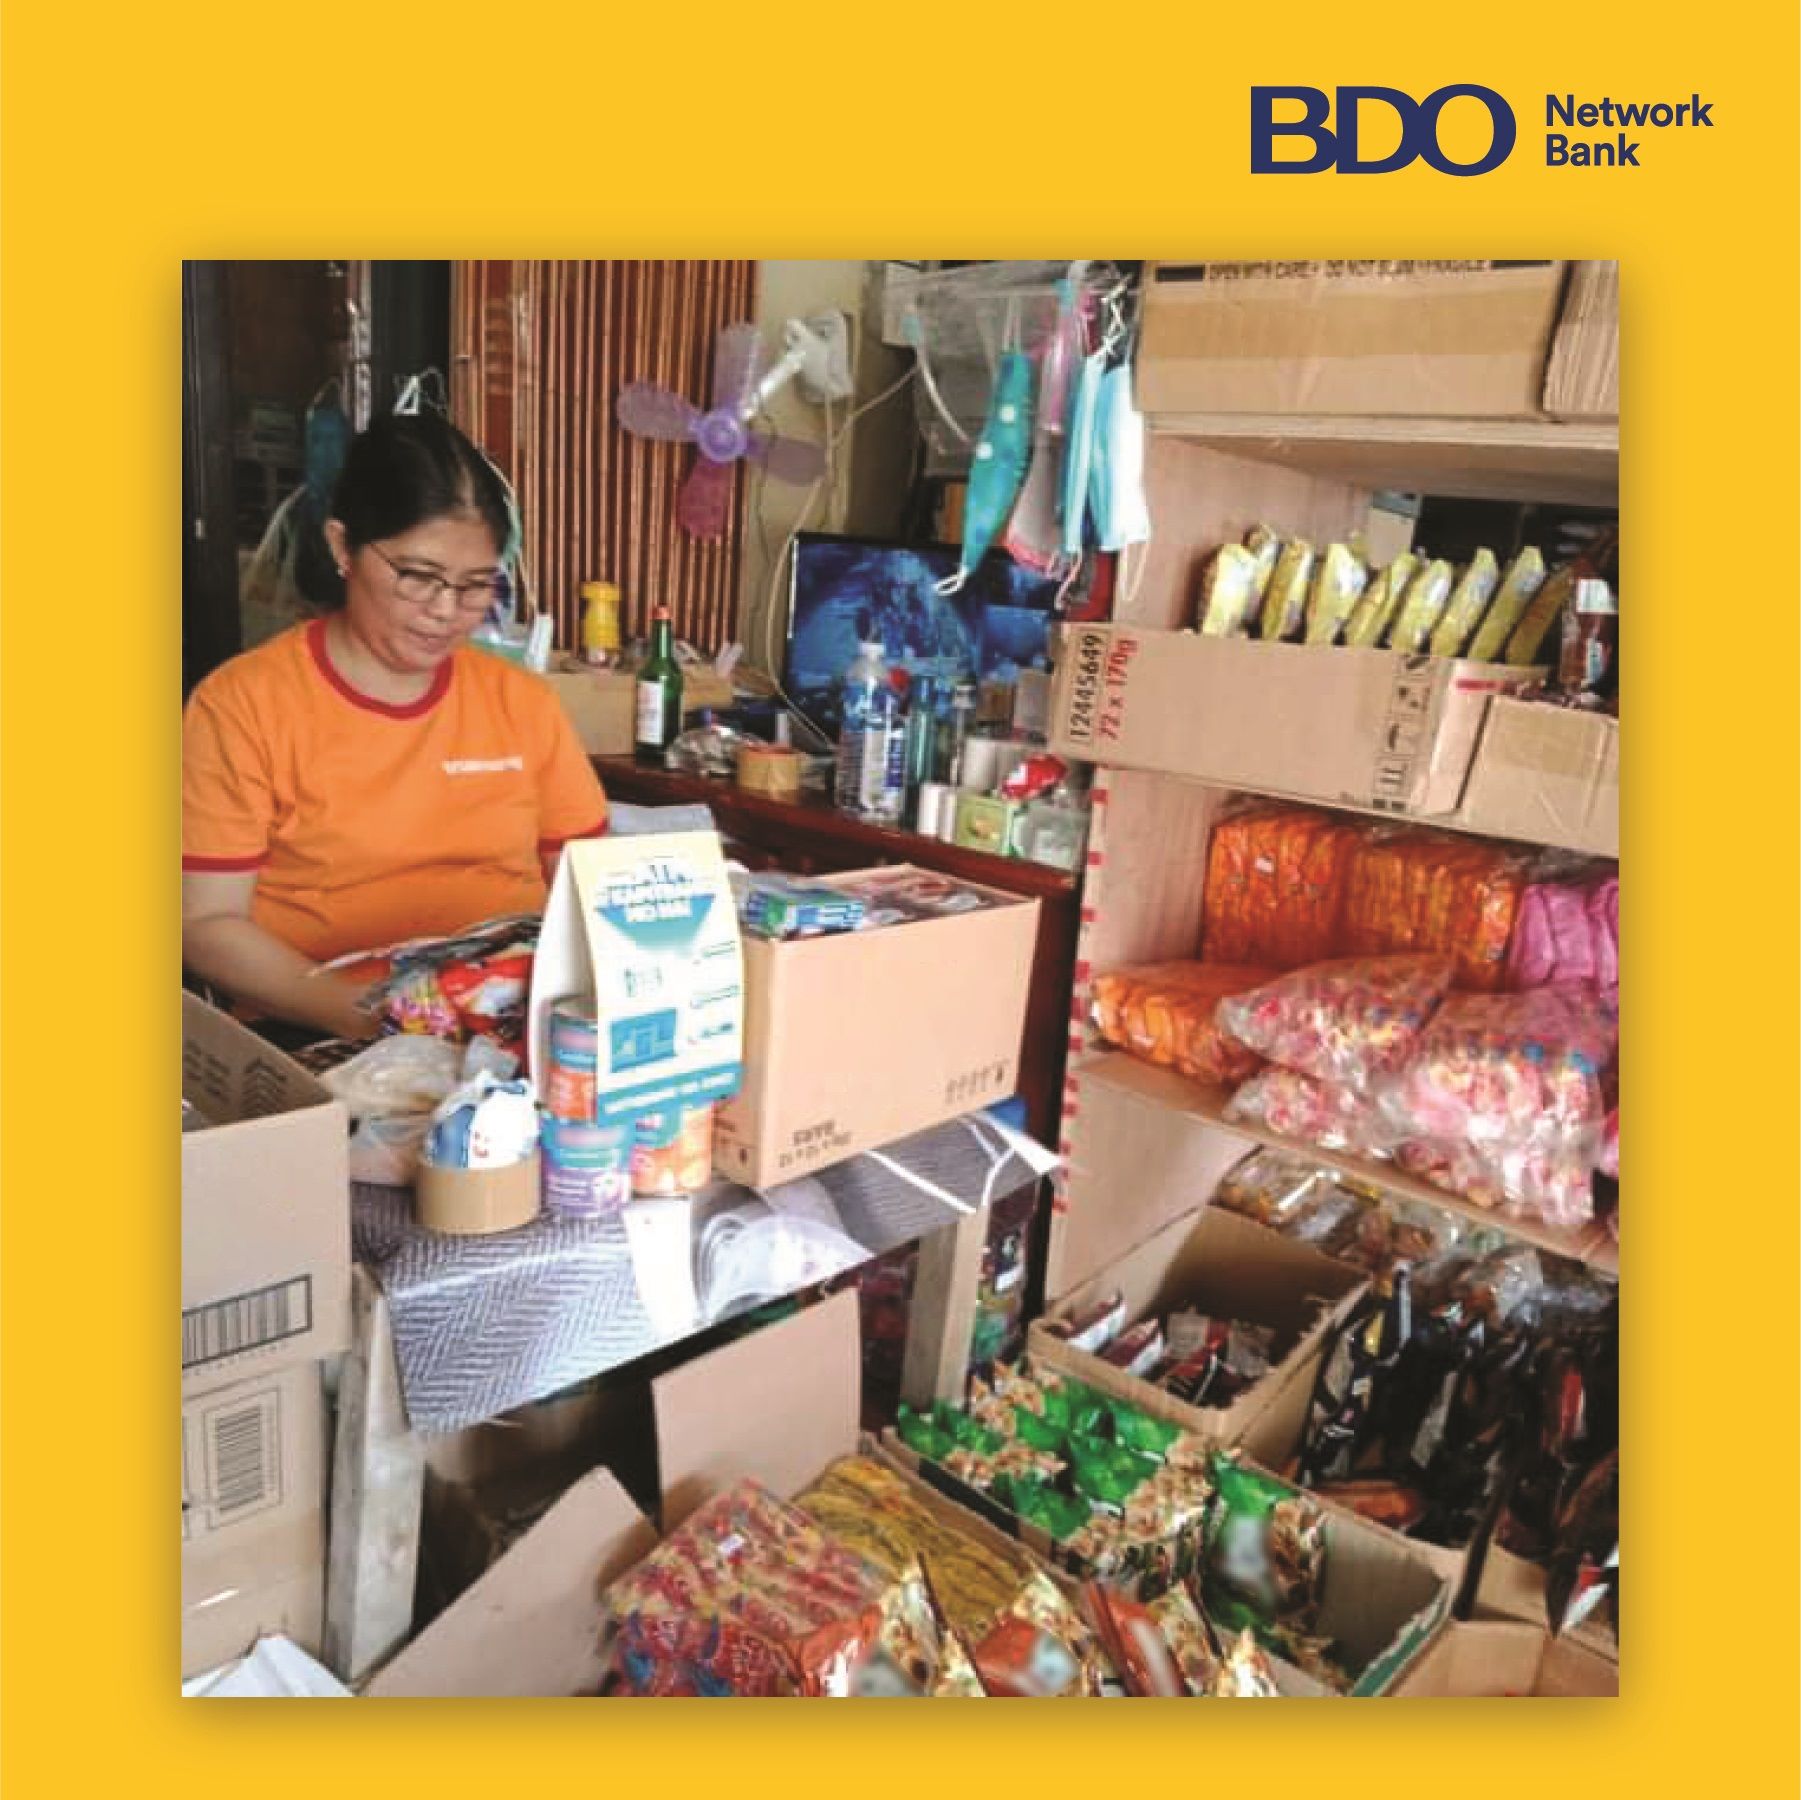 BDO NETWORK BANK MSME. Sobra ang pasasalamat ni Lulu Saquing sa BDO Network Bank Kabuhayan Loan dahil nakatulong ito para makabili sya ng van na ginawa niyang rolling store sa kanilang lugar sa Cagayan Valley.